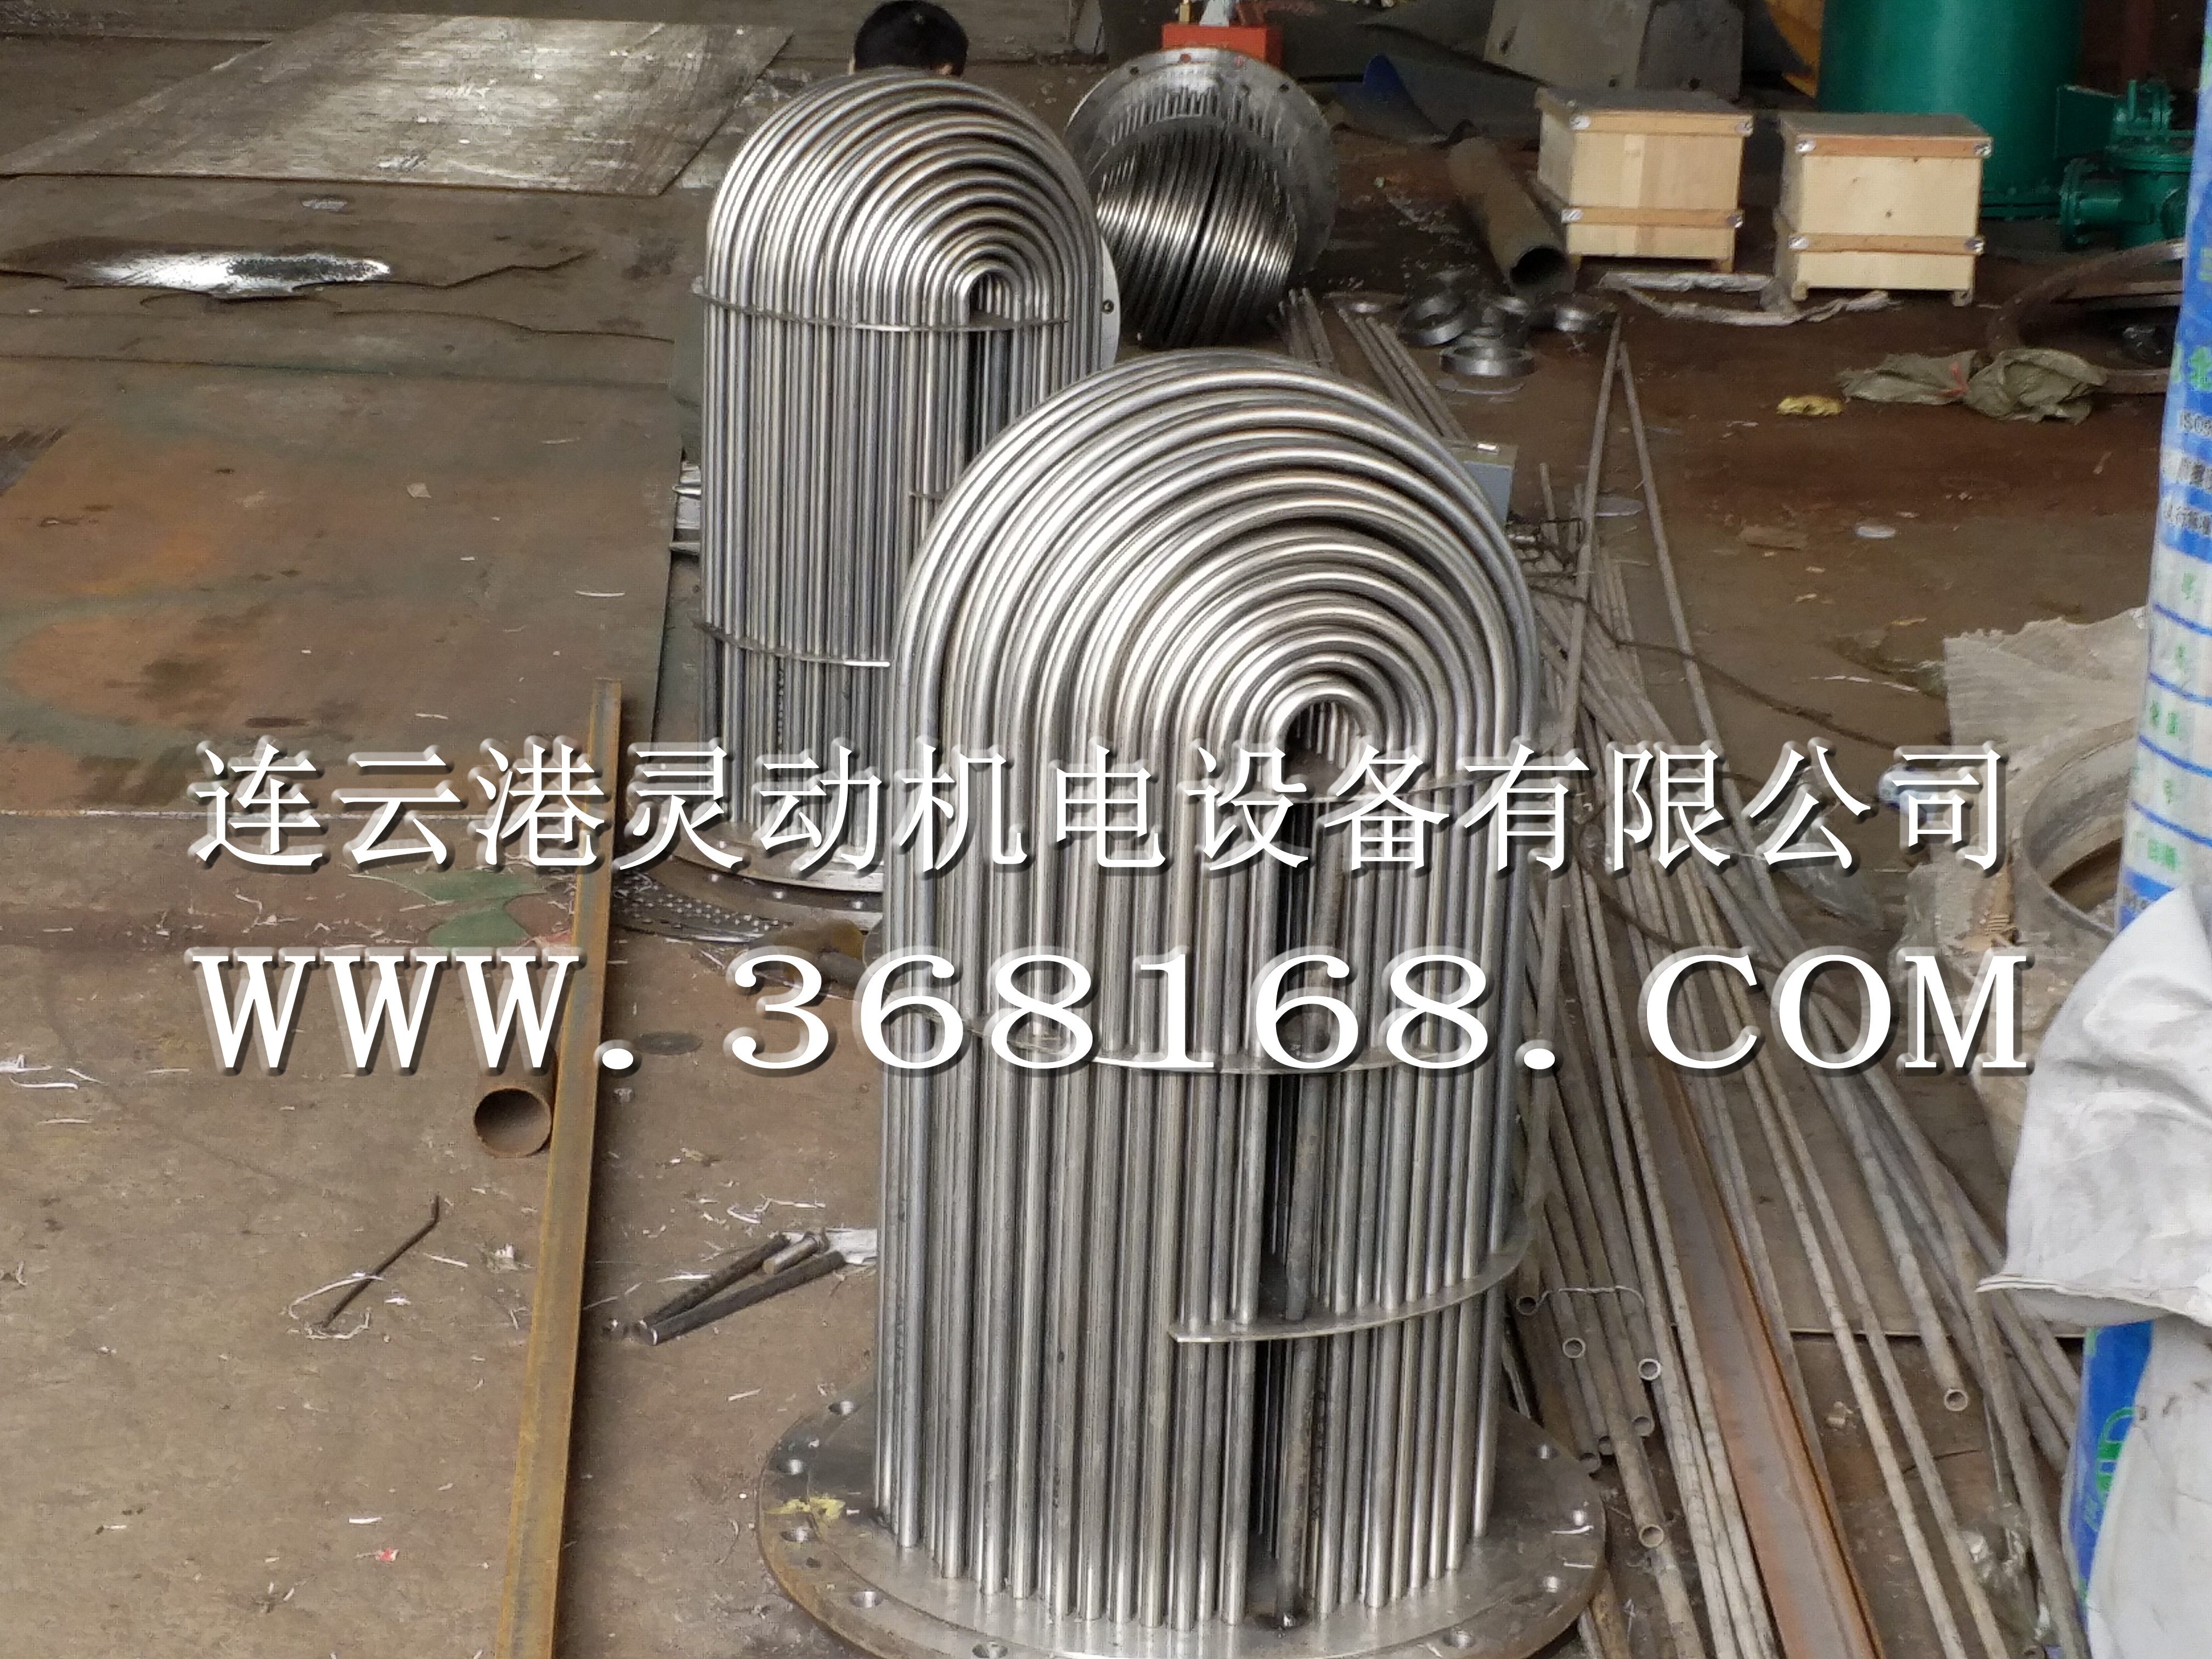 连云港灵动机电设备有限公司汽封加热器换管厂家,汽封加热器又称轴封